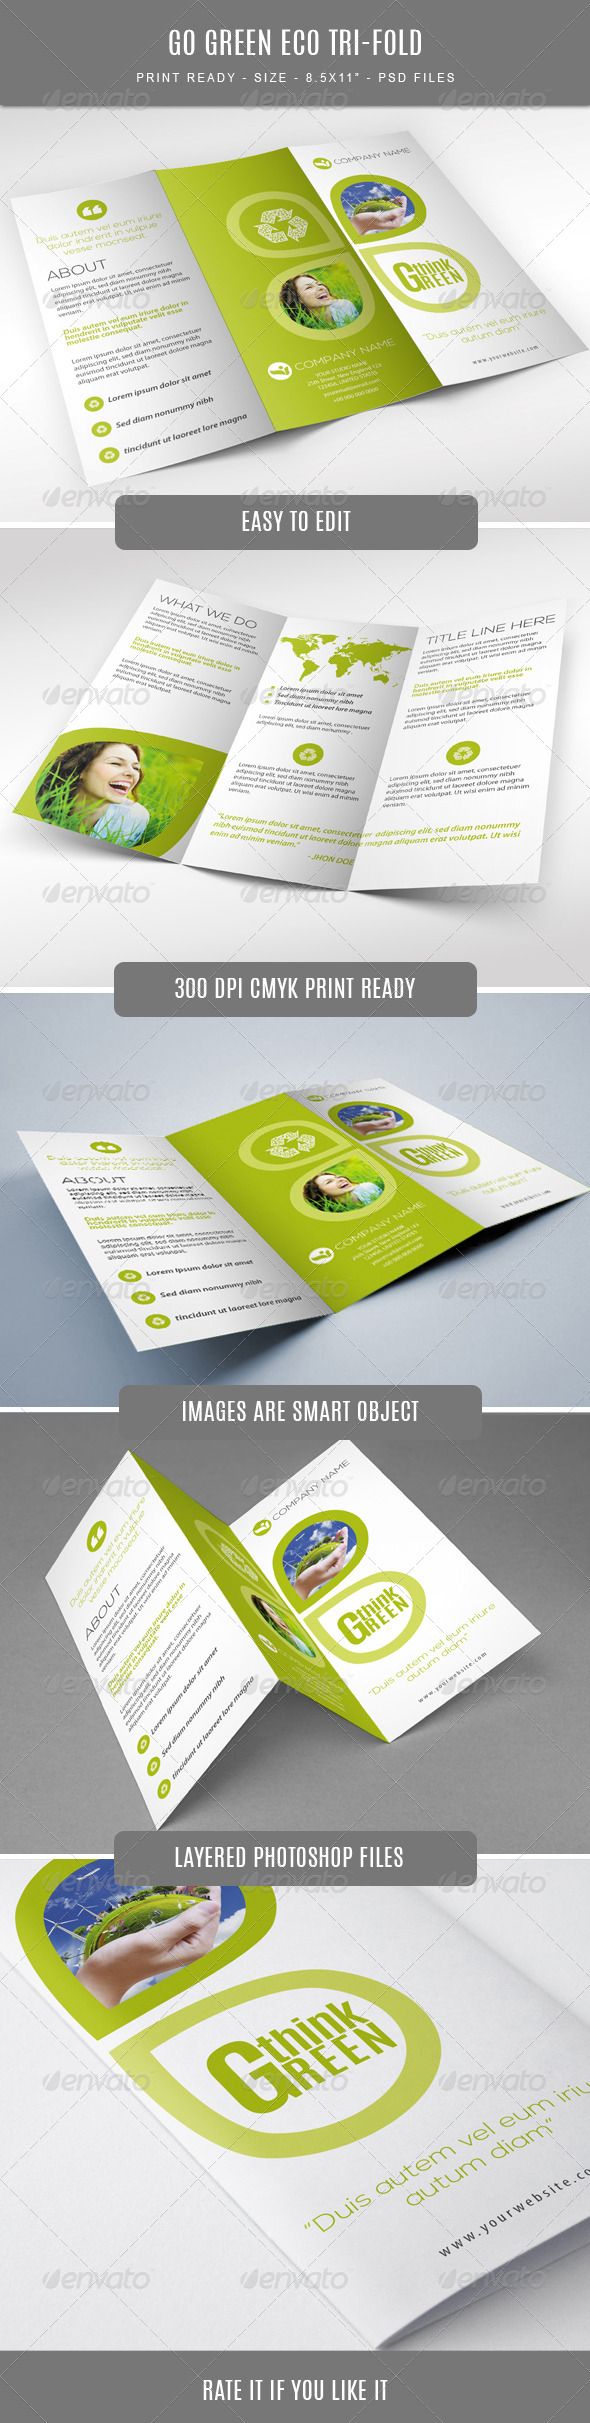 GraphicRiver Go Green Eco Tri-Fold Brochure 7700402